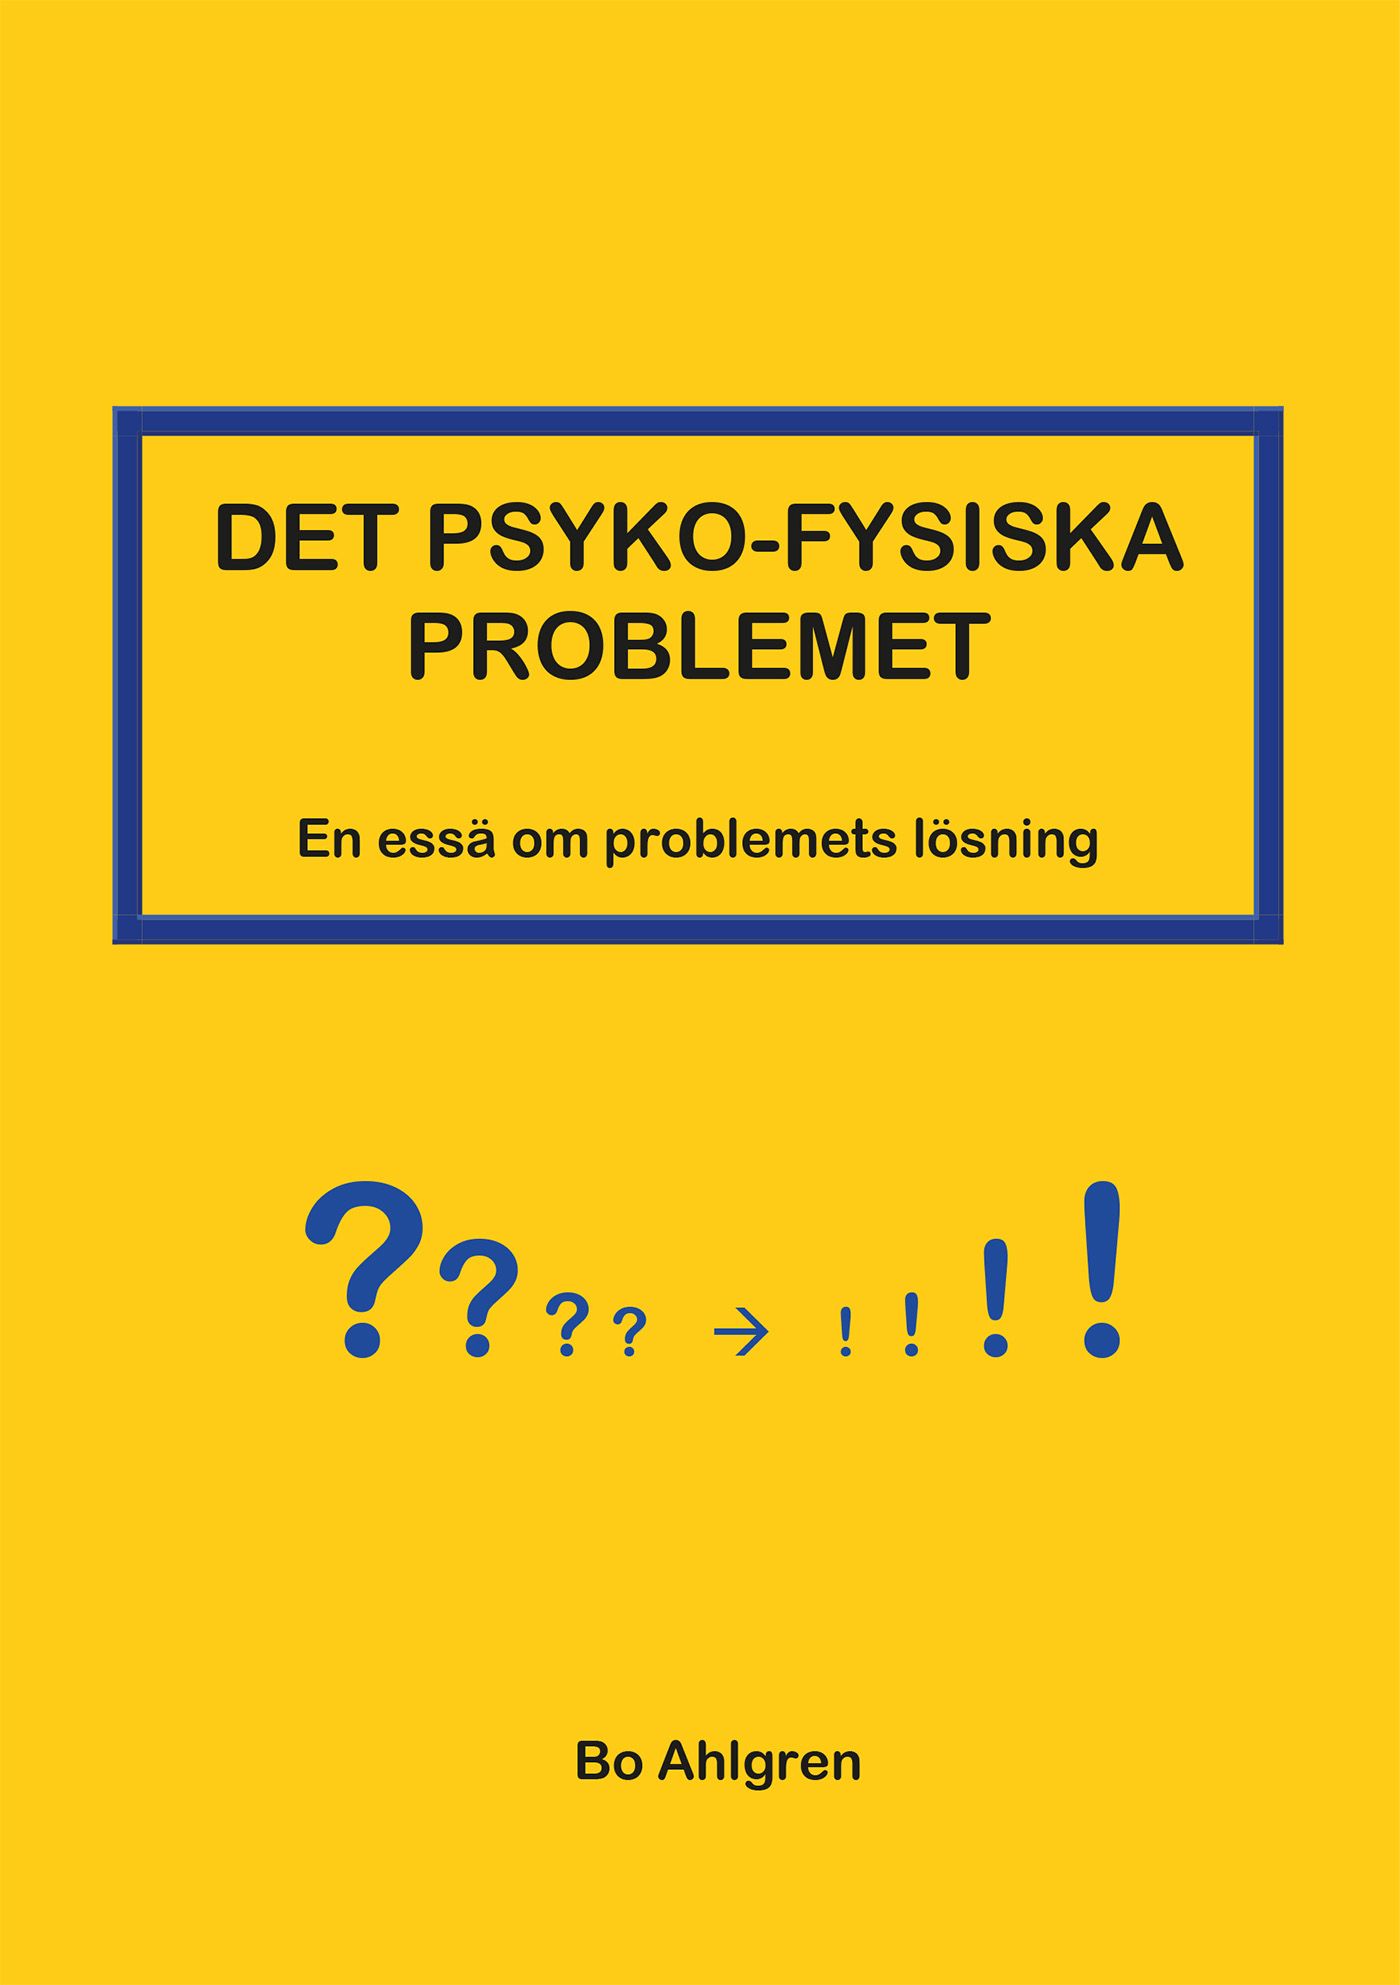 DET PSYKO-FYSISKA PROBLEMET, e-bok av Bo Ahlgren